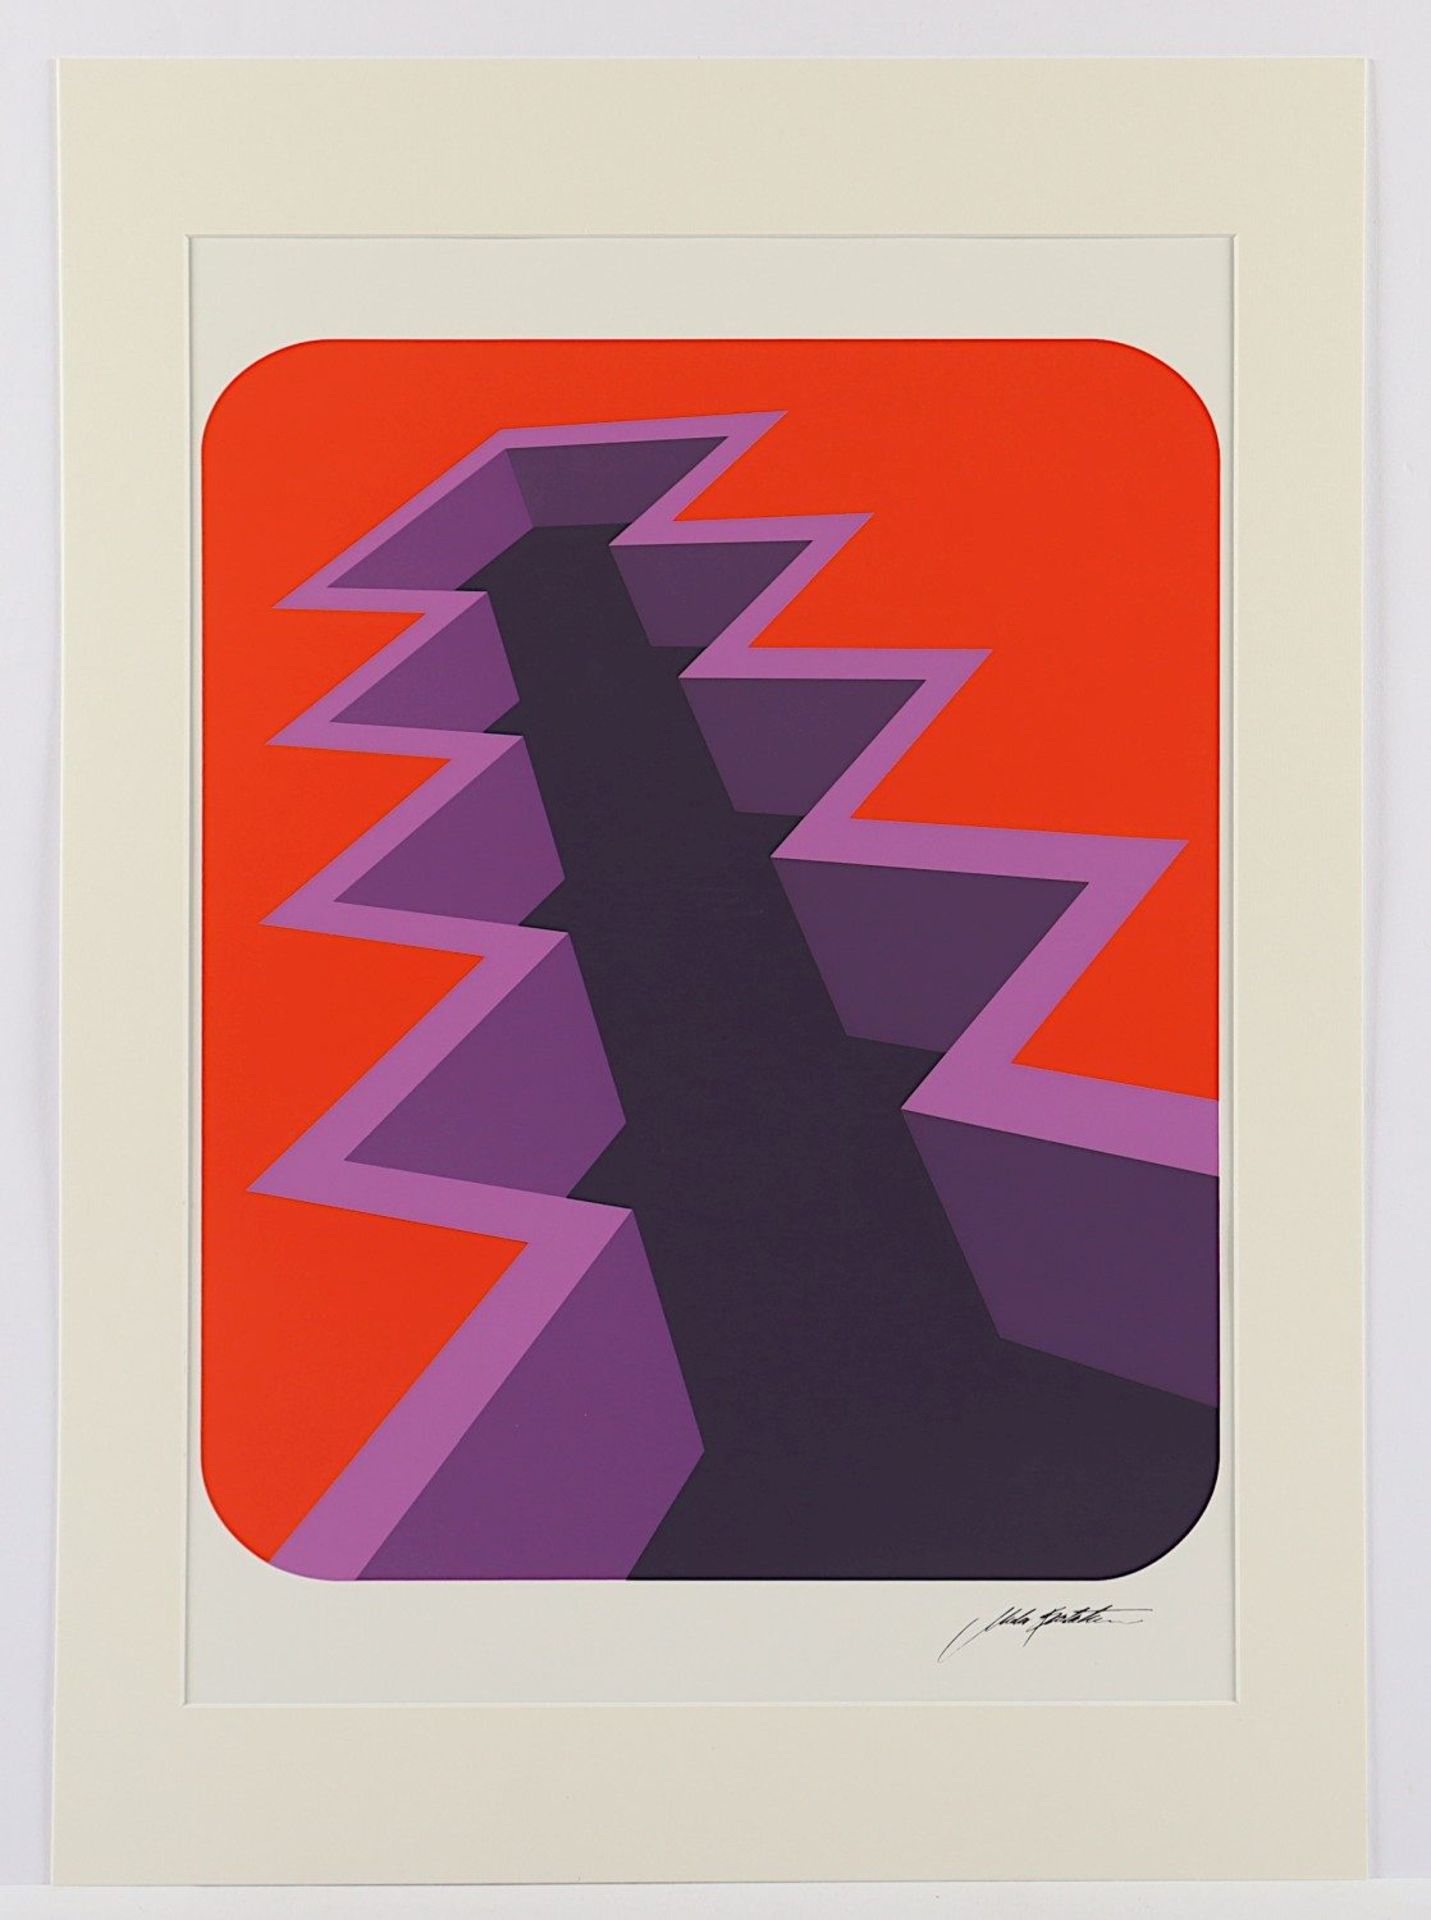 SPALATIN, Markus, "Komposition", Farbserigrafie, 48 x 39, im Druck signiert, 1976, ungerahmt